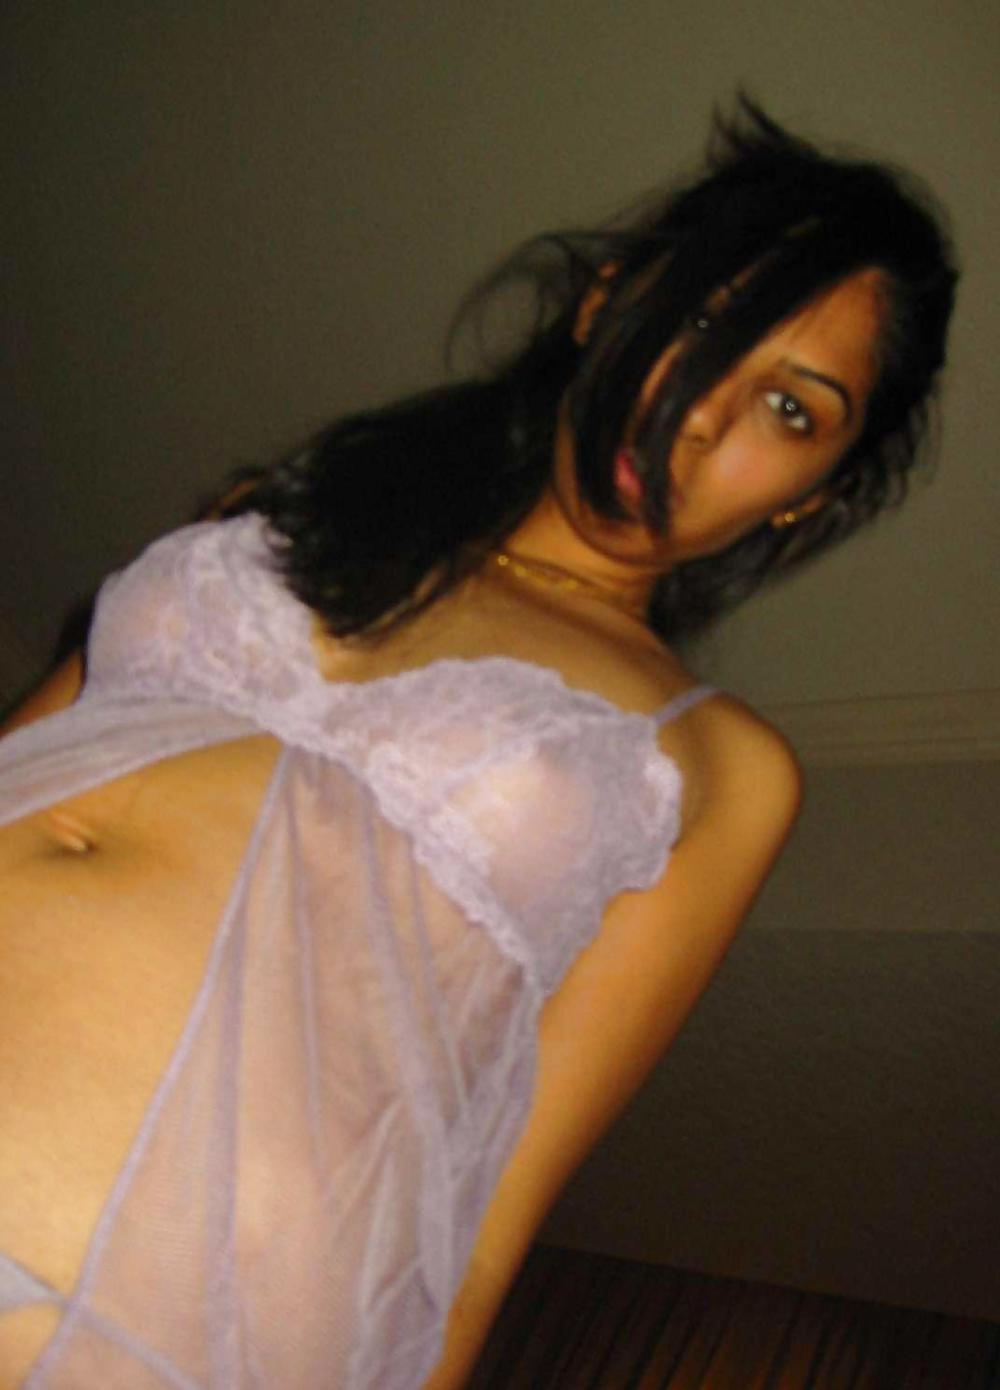 Selten Echte Sexy Bilder: Nackt, Halb Nackt Und Gekleidete #15030274